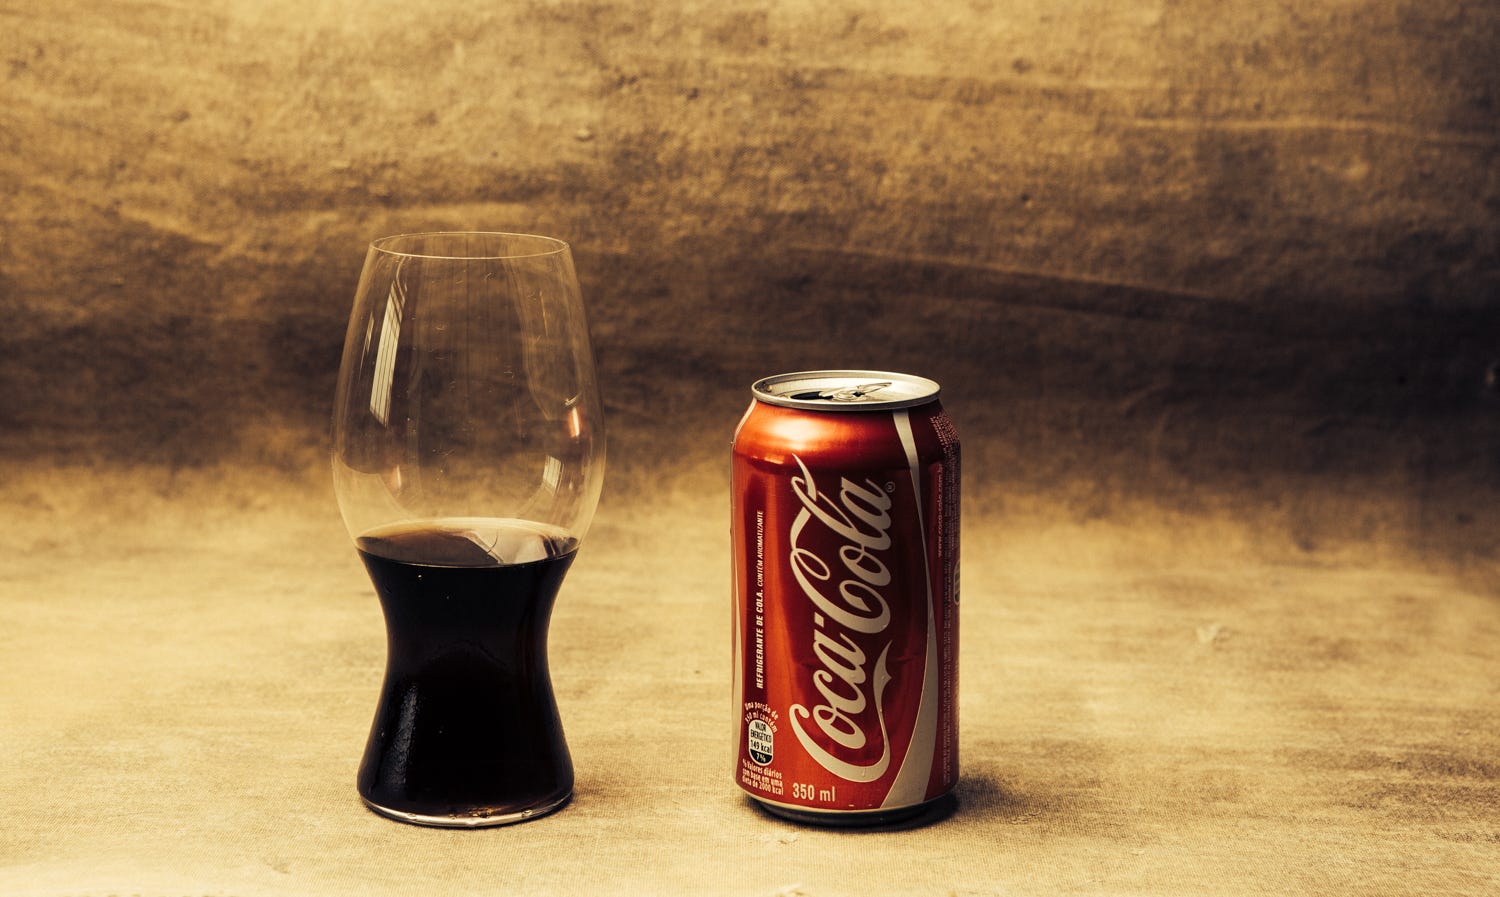 Tem copo certo para tomar Coca-Cola? | by Rafael Tonon | Medium